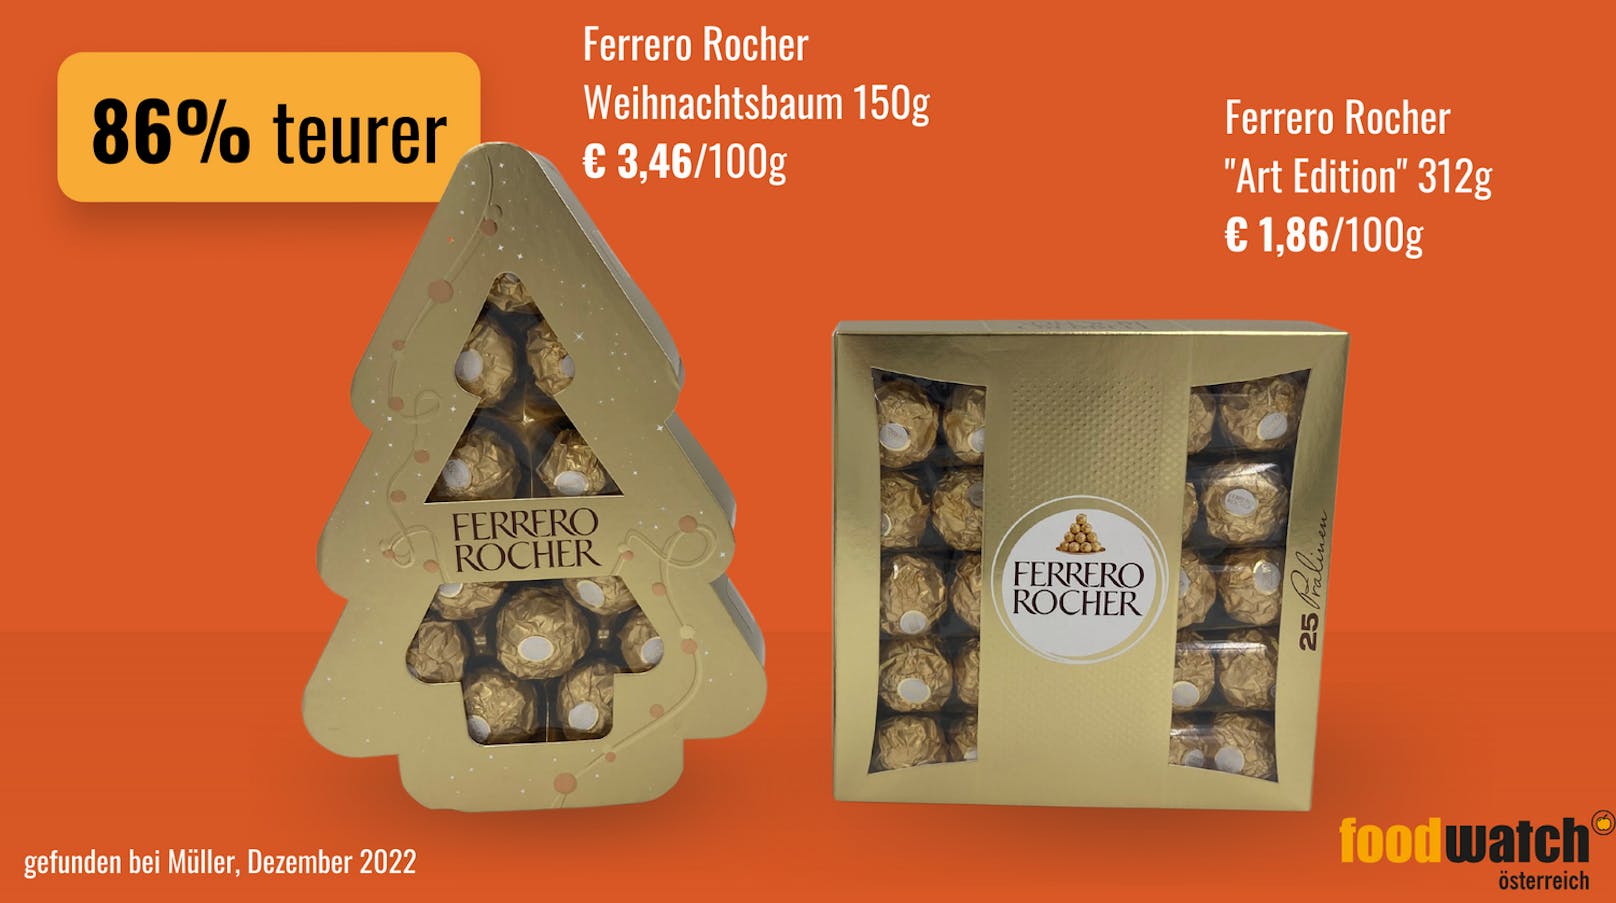 Ferrero Rocher wird in einer großen Drogeriemarktkette in der Weihnachtsbaum-Verpackung angeboten. Der weihnachtliche Glanz um die Naschereien kostet um 86 Prozent mehr als die einfache Geschenkschachtel.